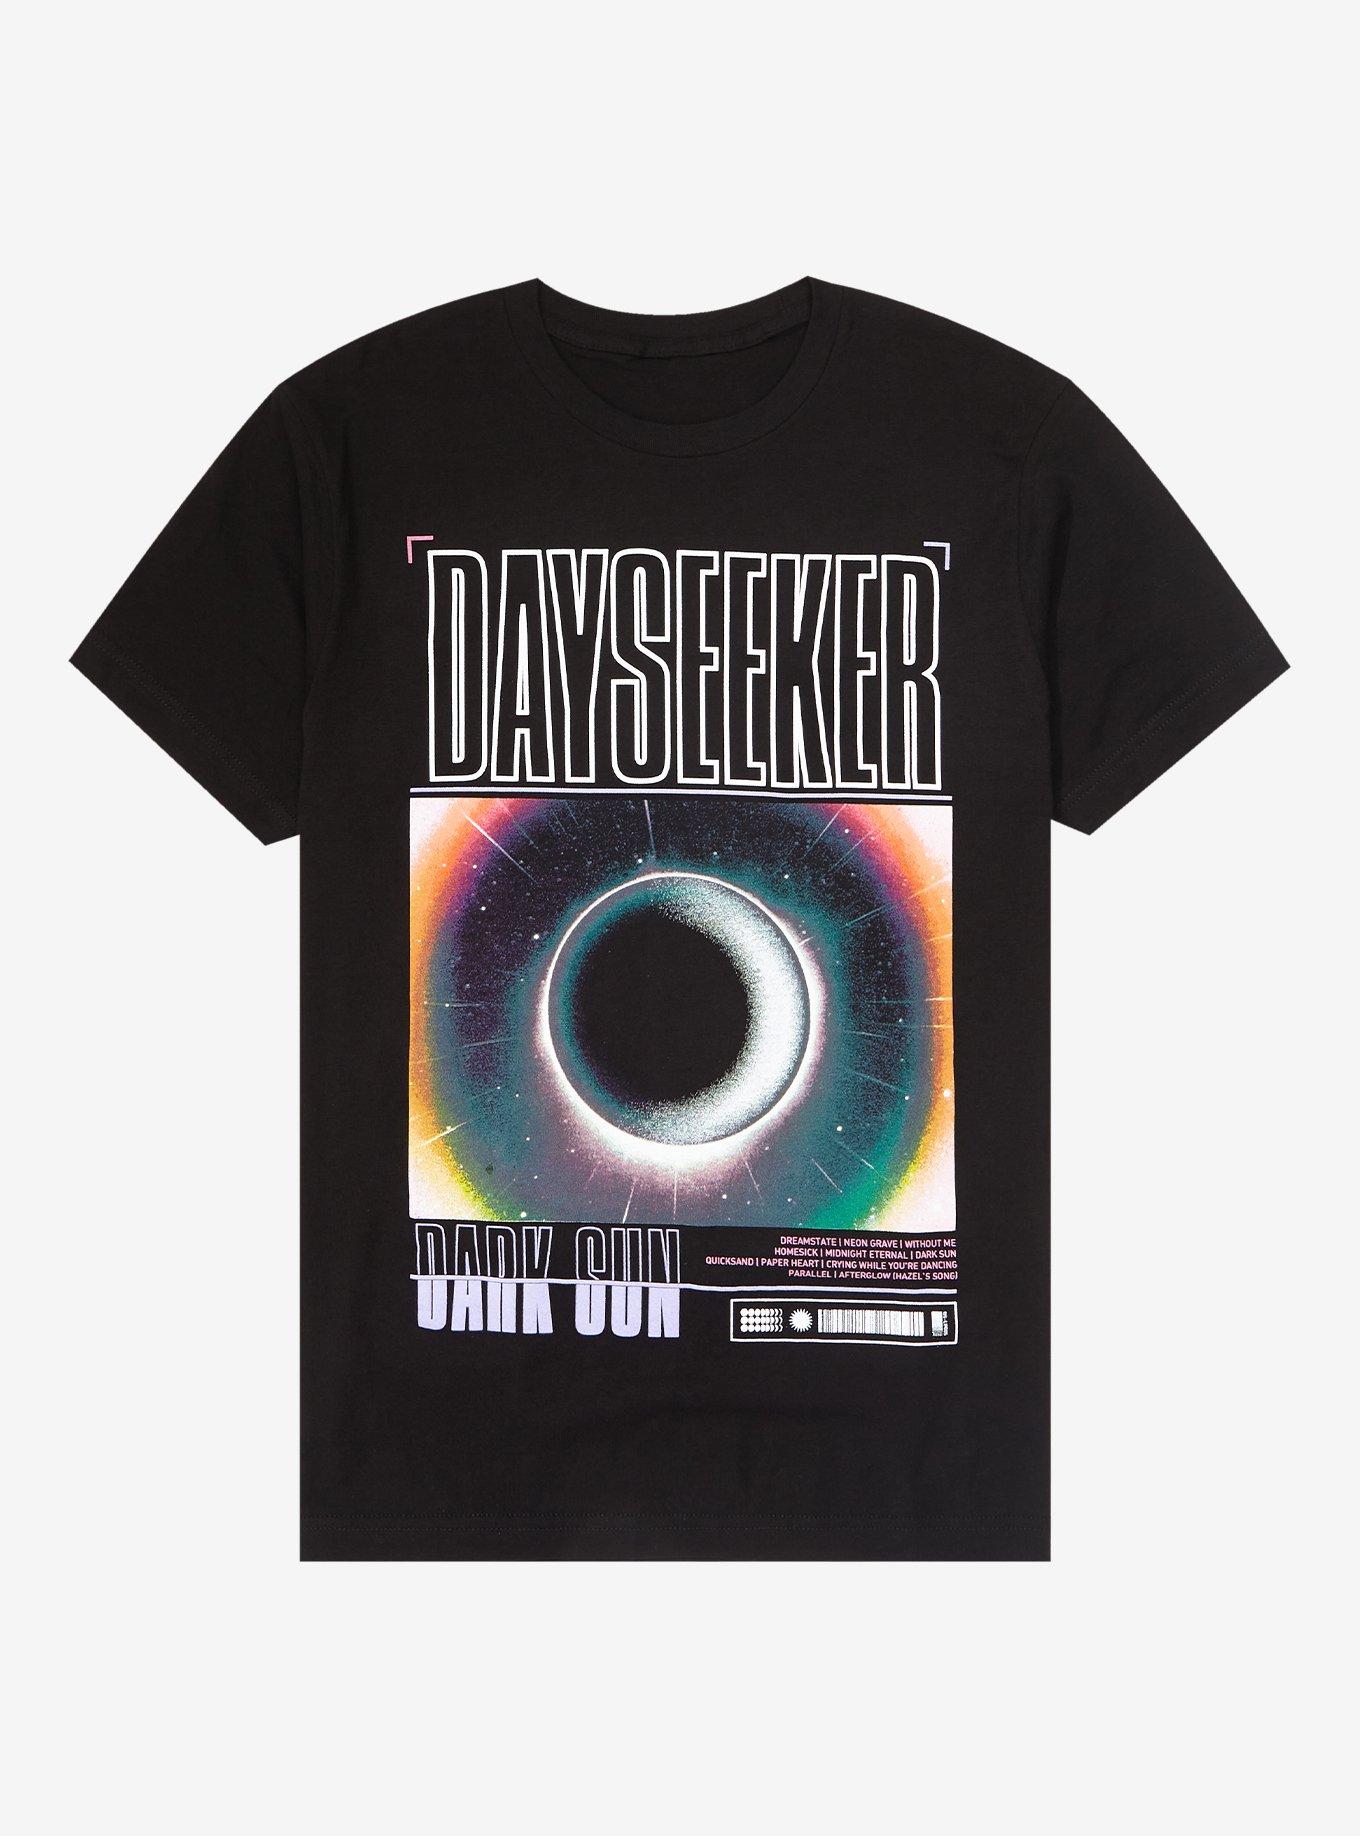 Dark Sun - Dayseeker - Vinyl - 12 Album Coloured Vinyl